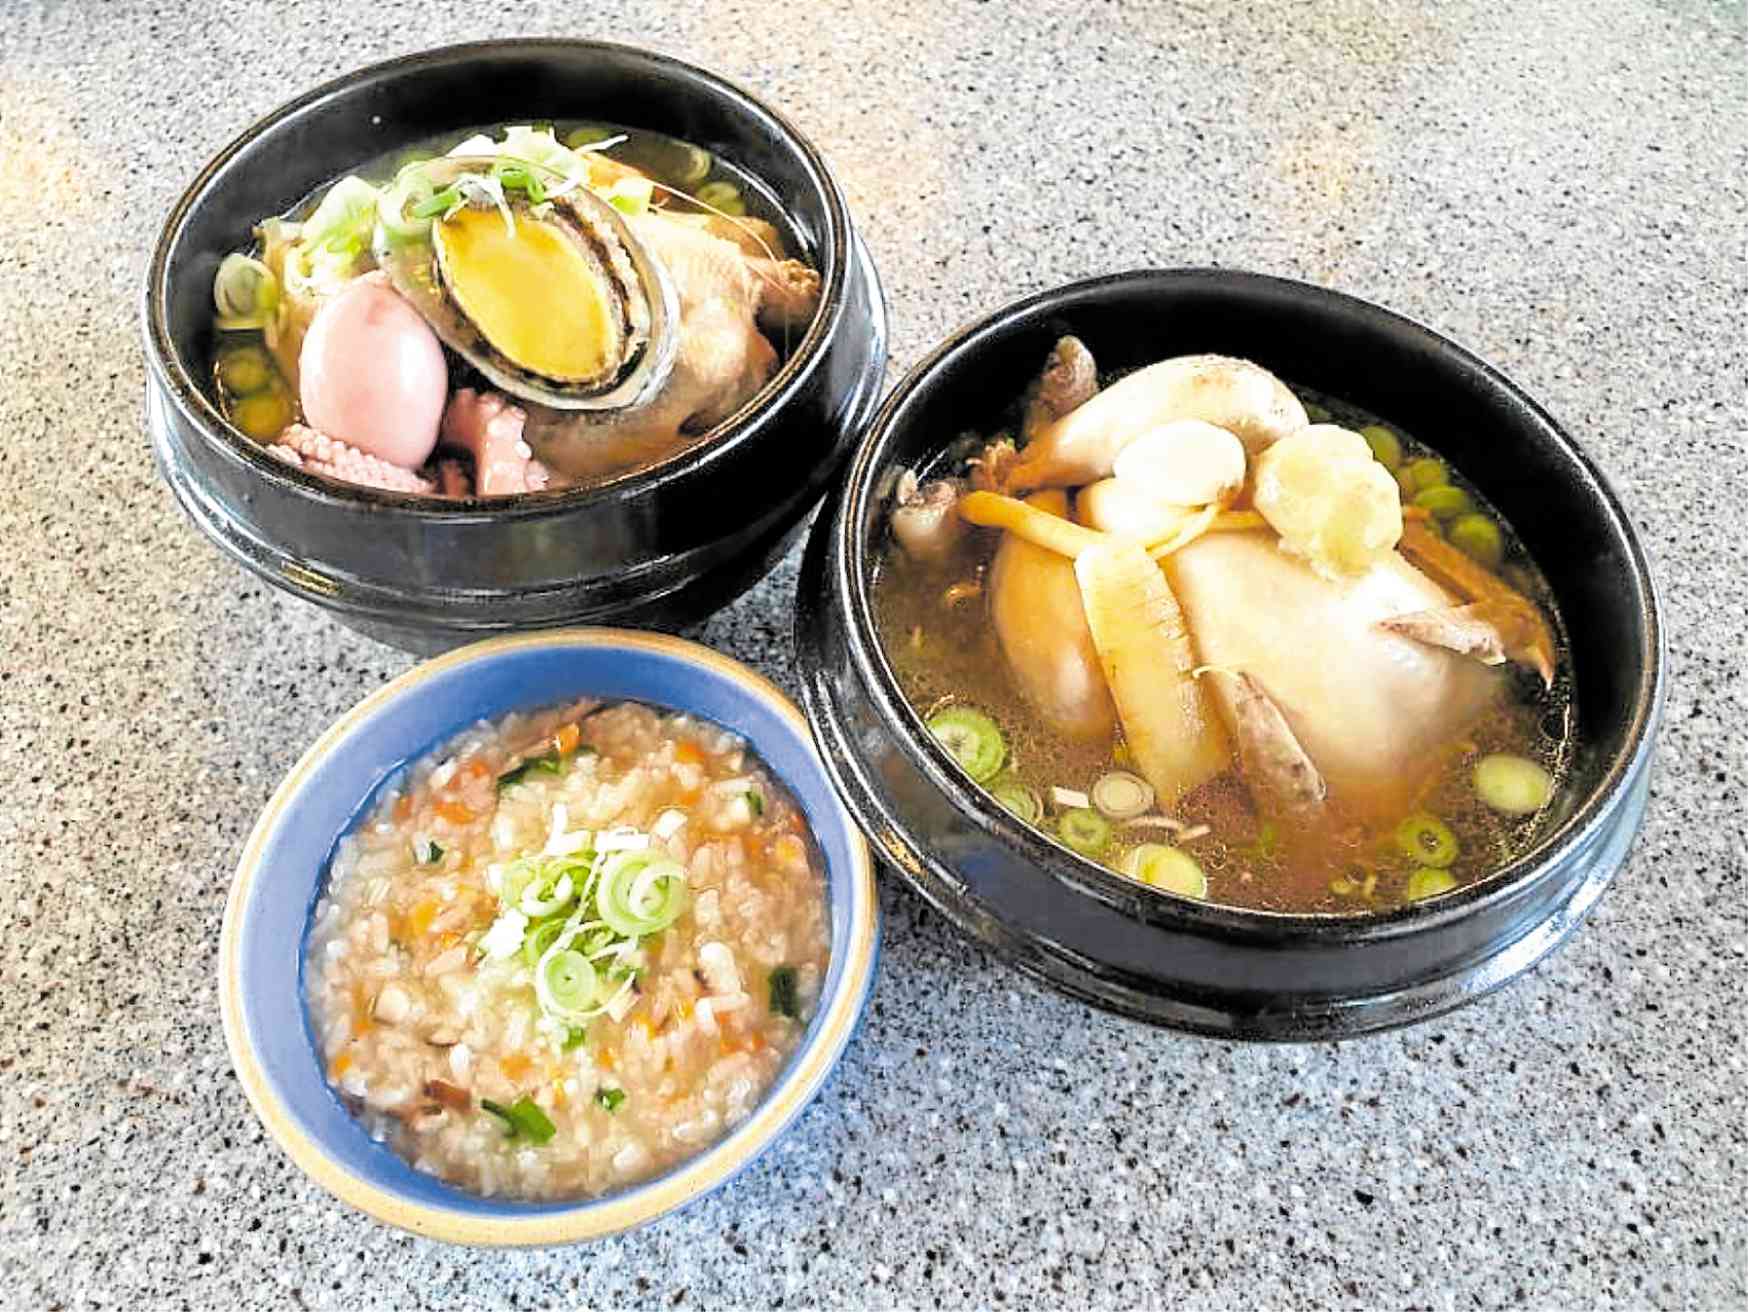 Seafood Samgyetang, Samgyetang, and Samgyetang Porridge